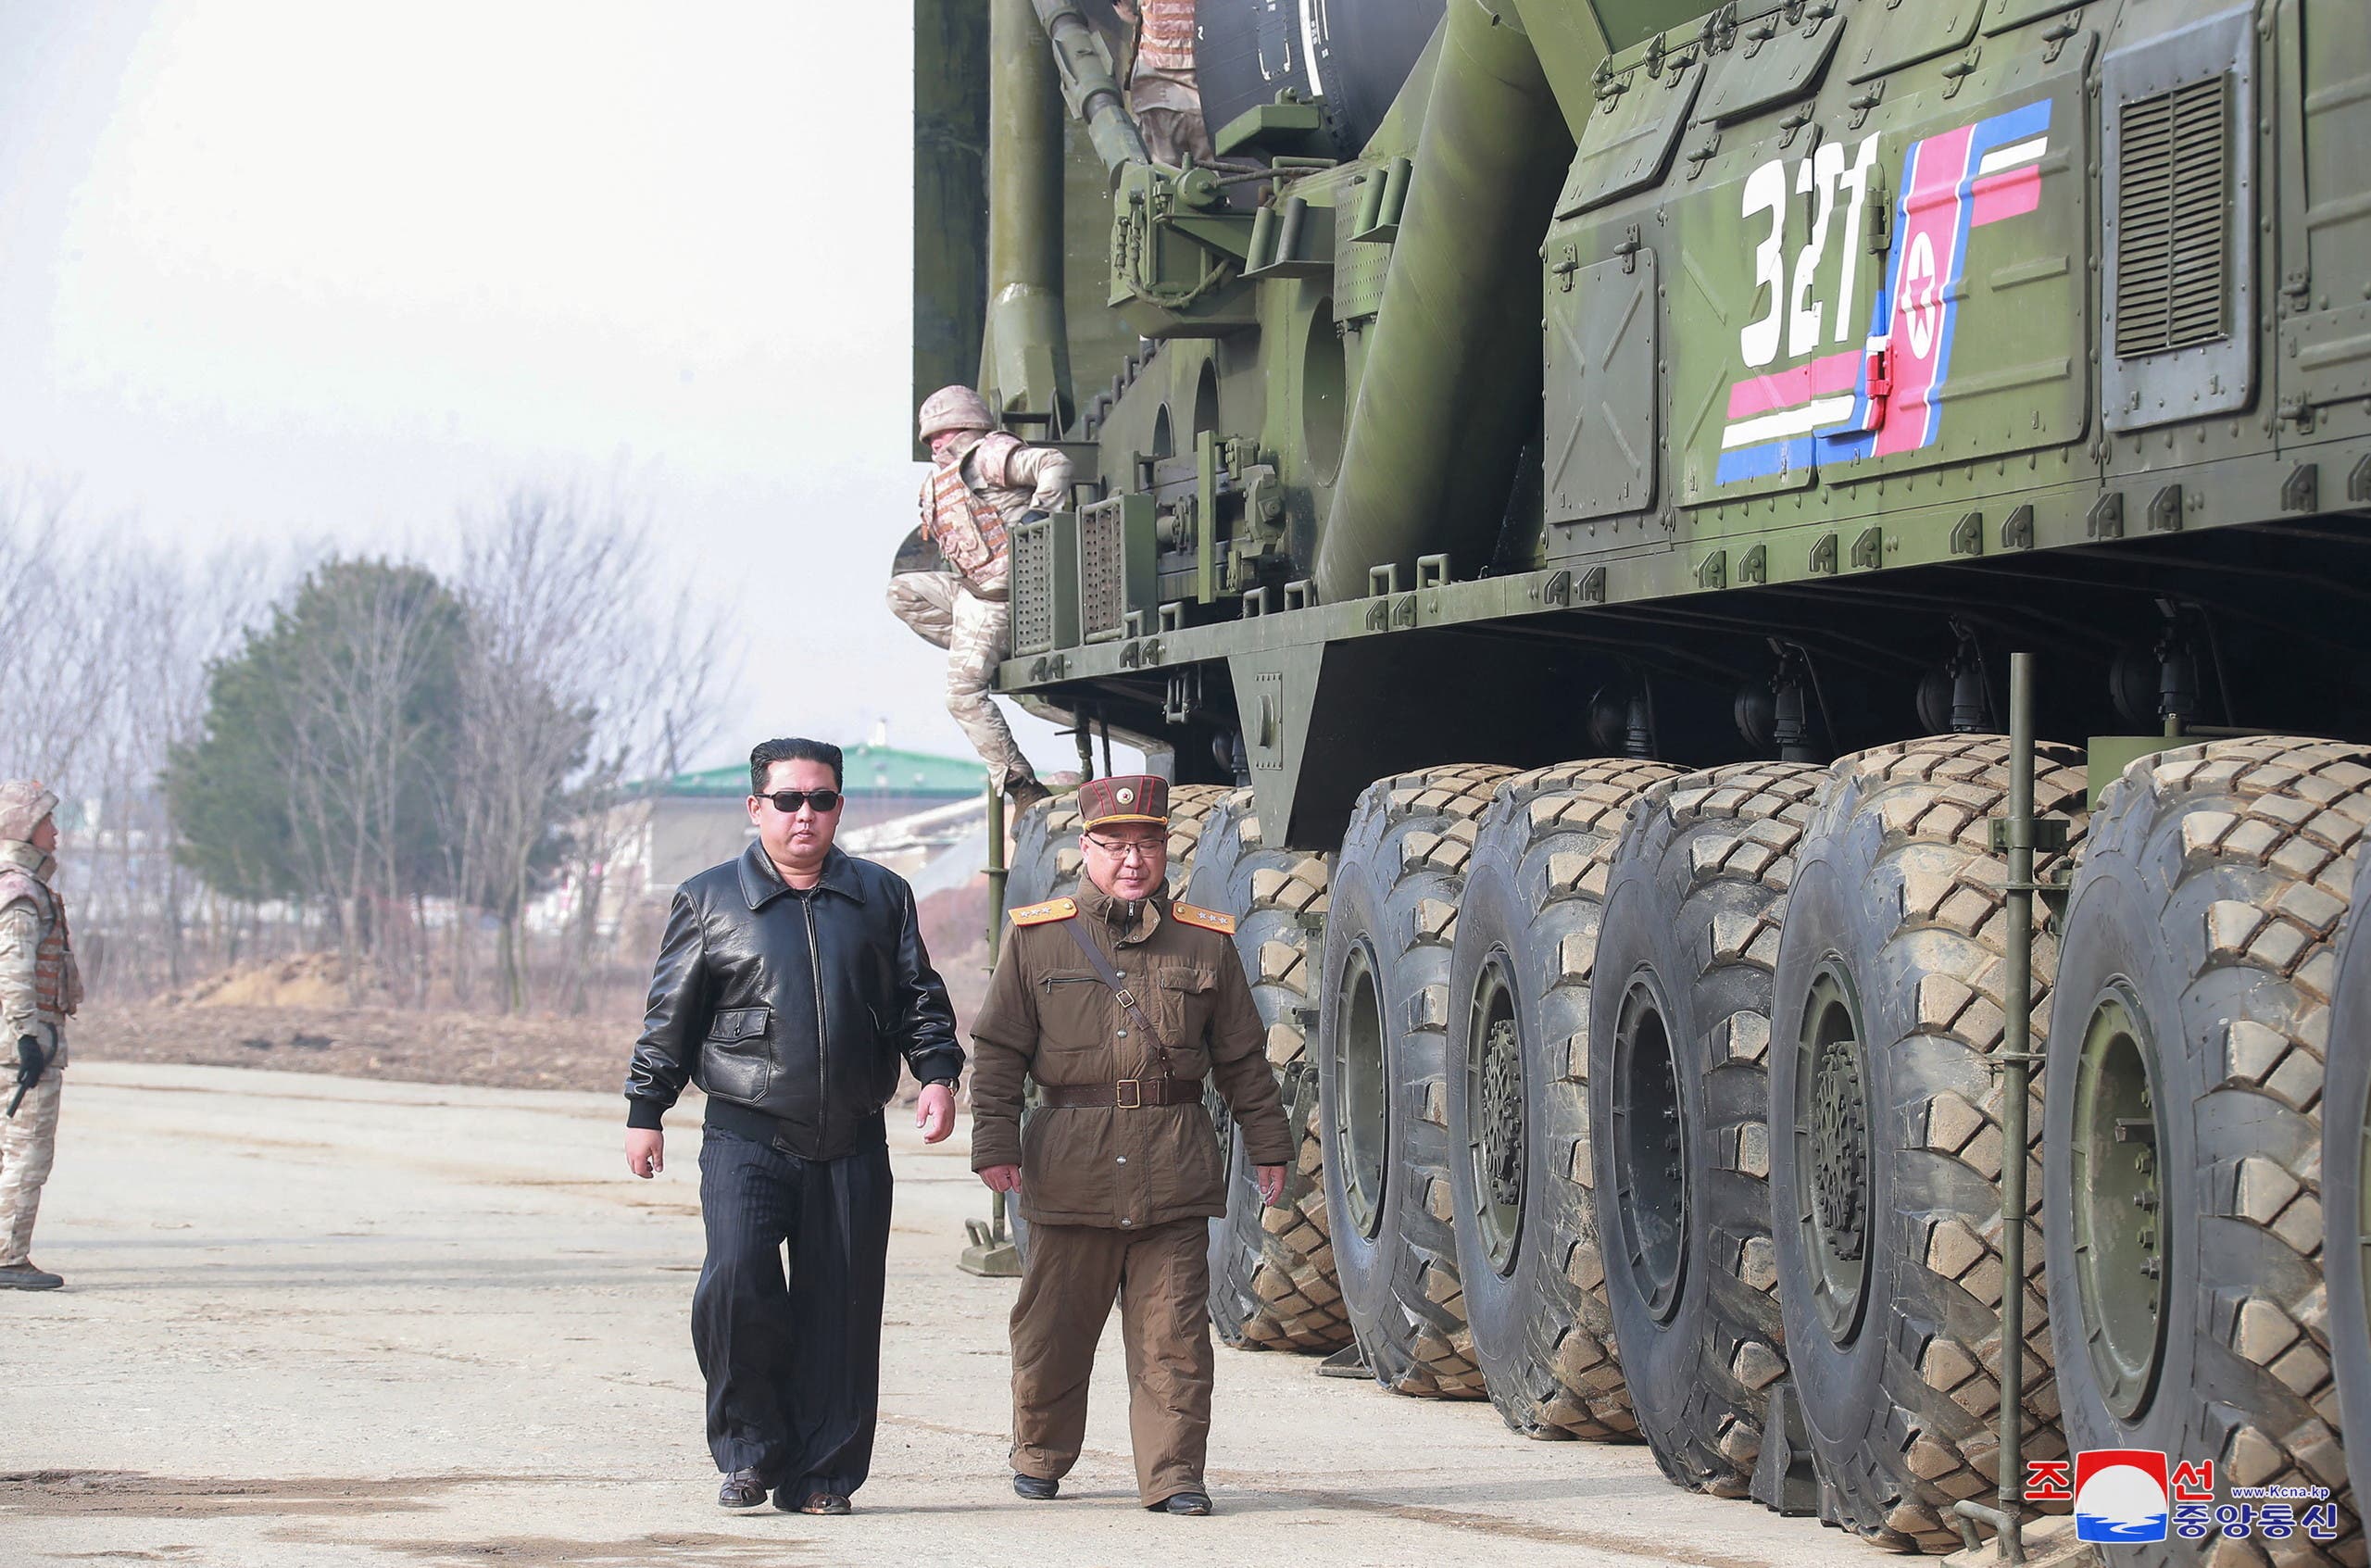  زعيم كوريا الشمالية كيم جونغ اون بجانب الصاروخ الوحشي - رويترز